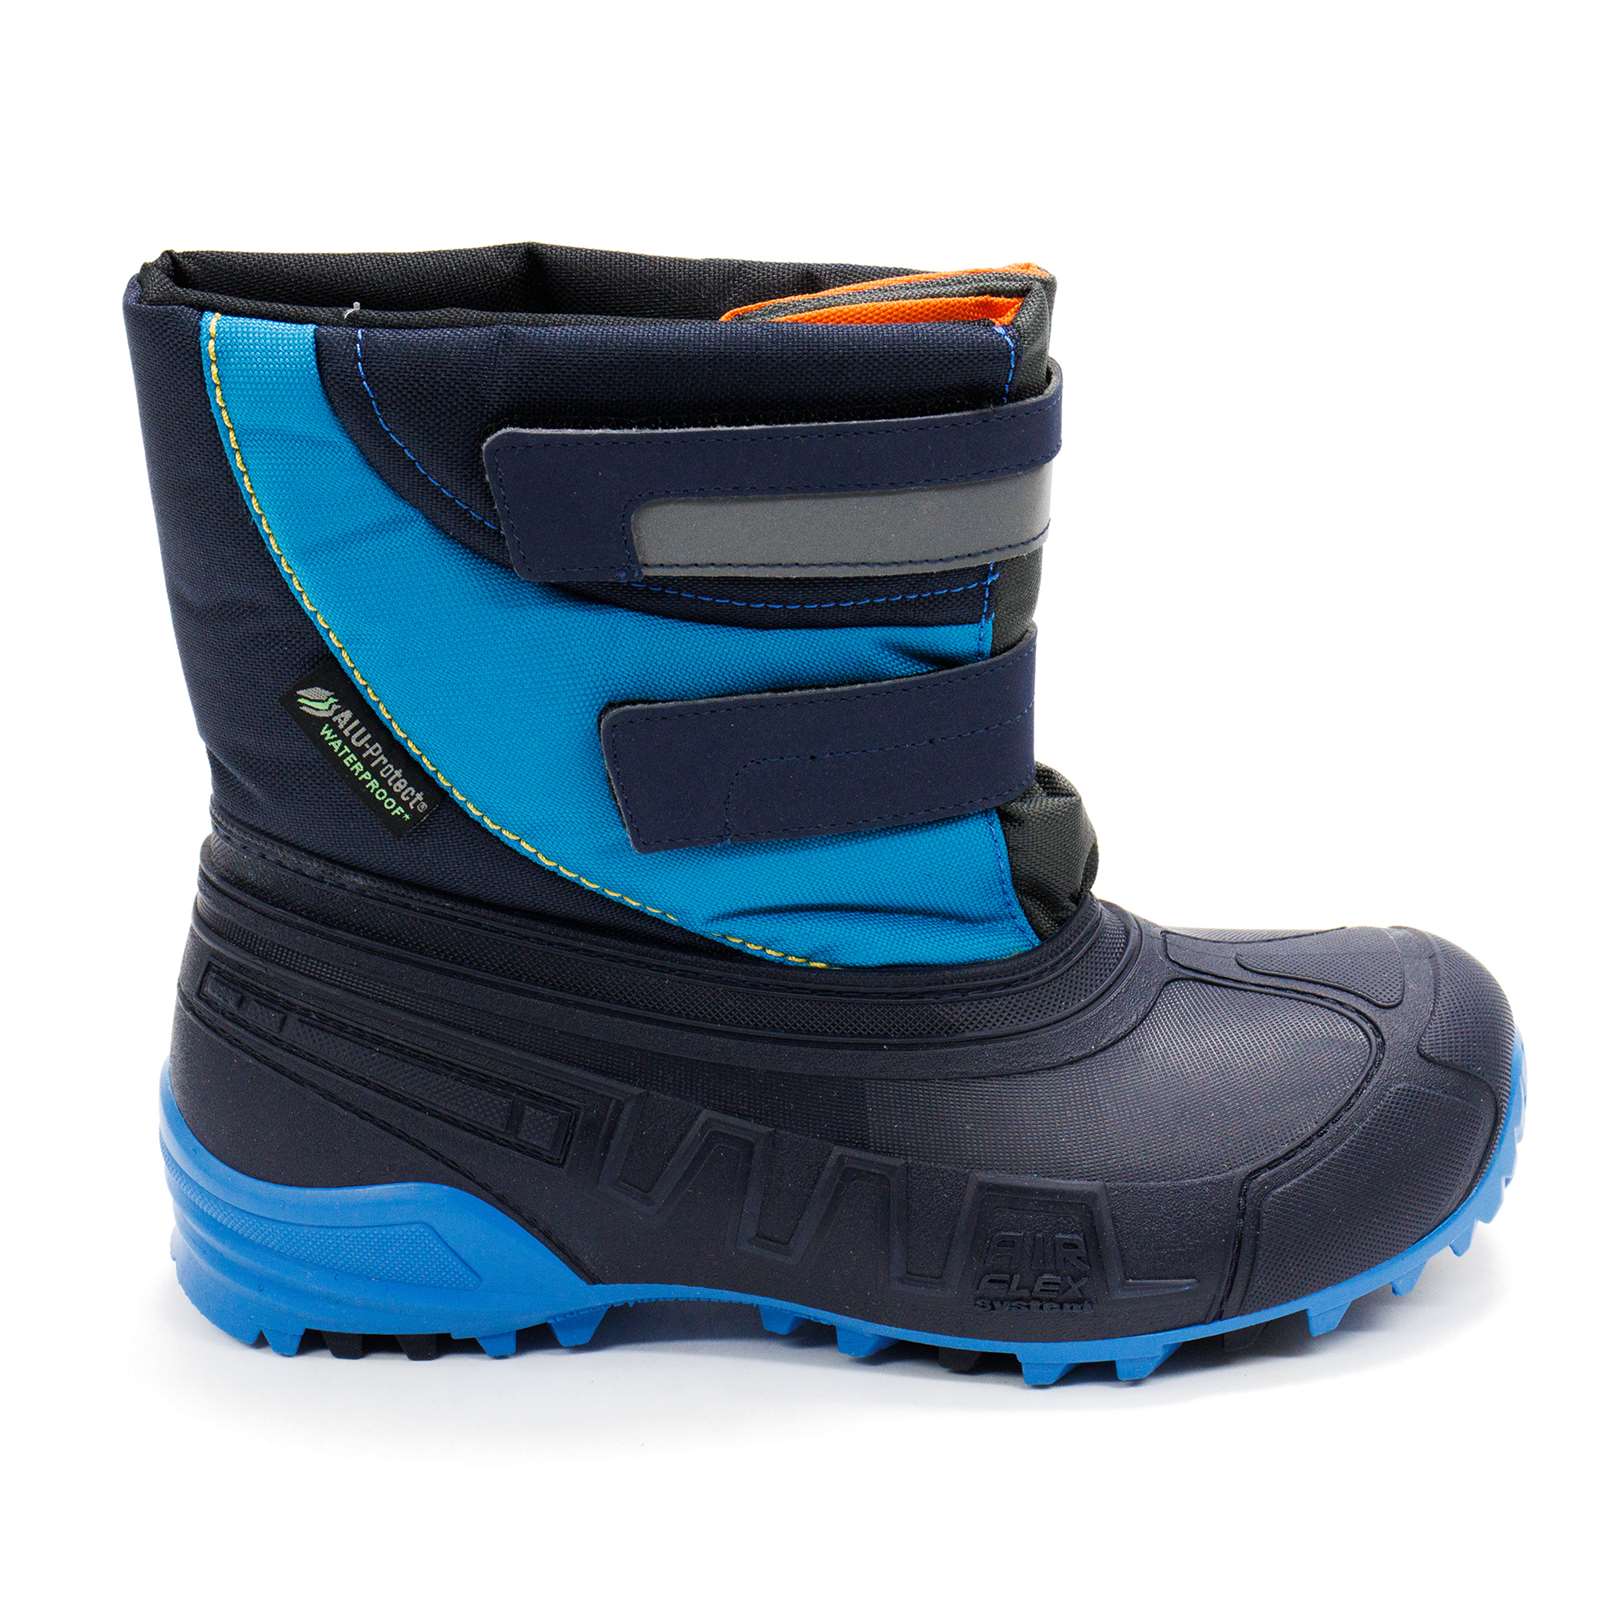 Boatilus Boy Hybrid02 Waterproof Boots